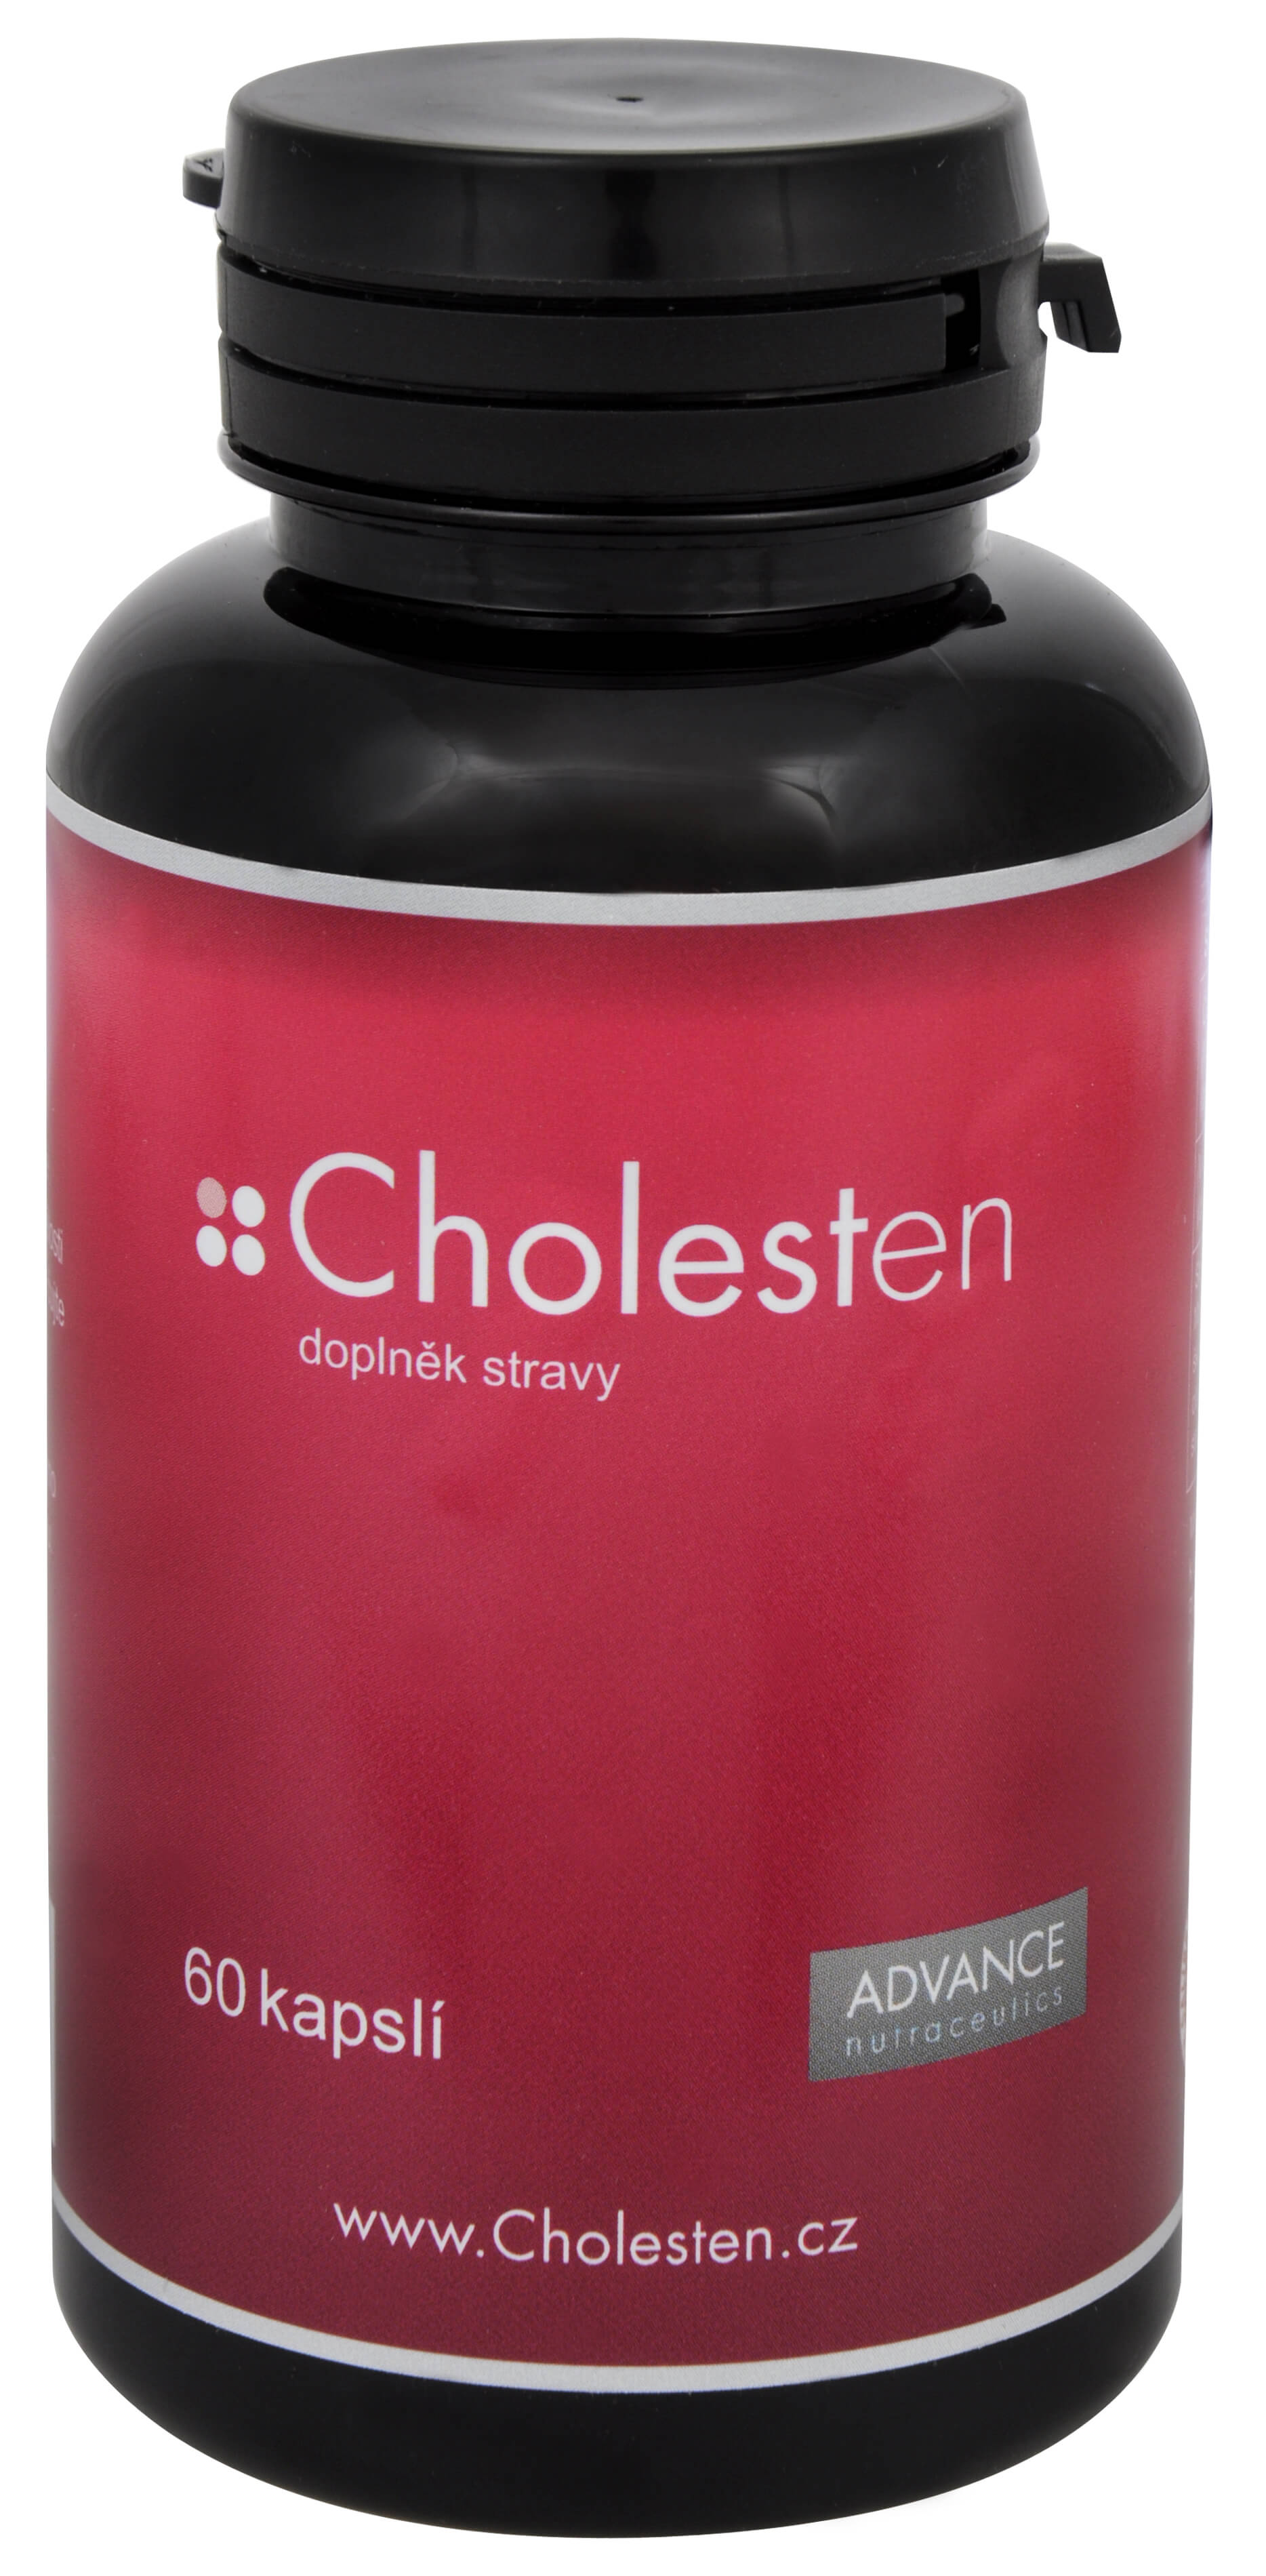 Zobrazit detail výrobku Advance nutraceutics Cholesten 60 cps.